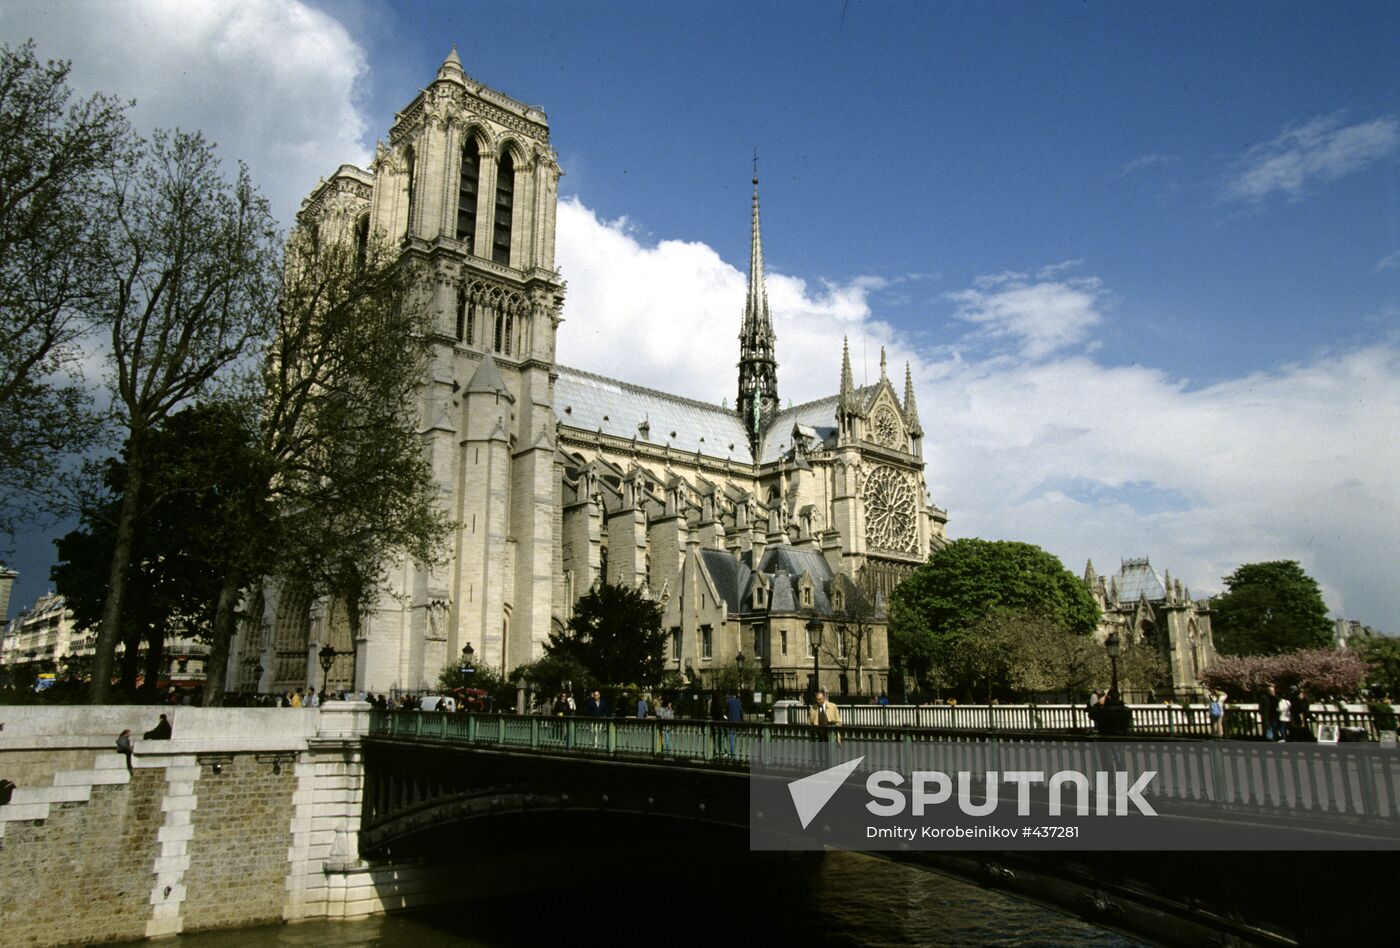 The Notre-Dame de Paris